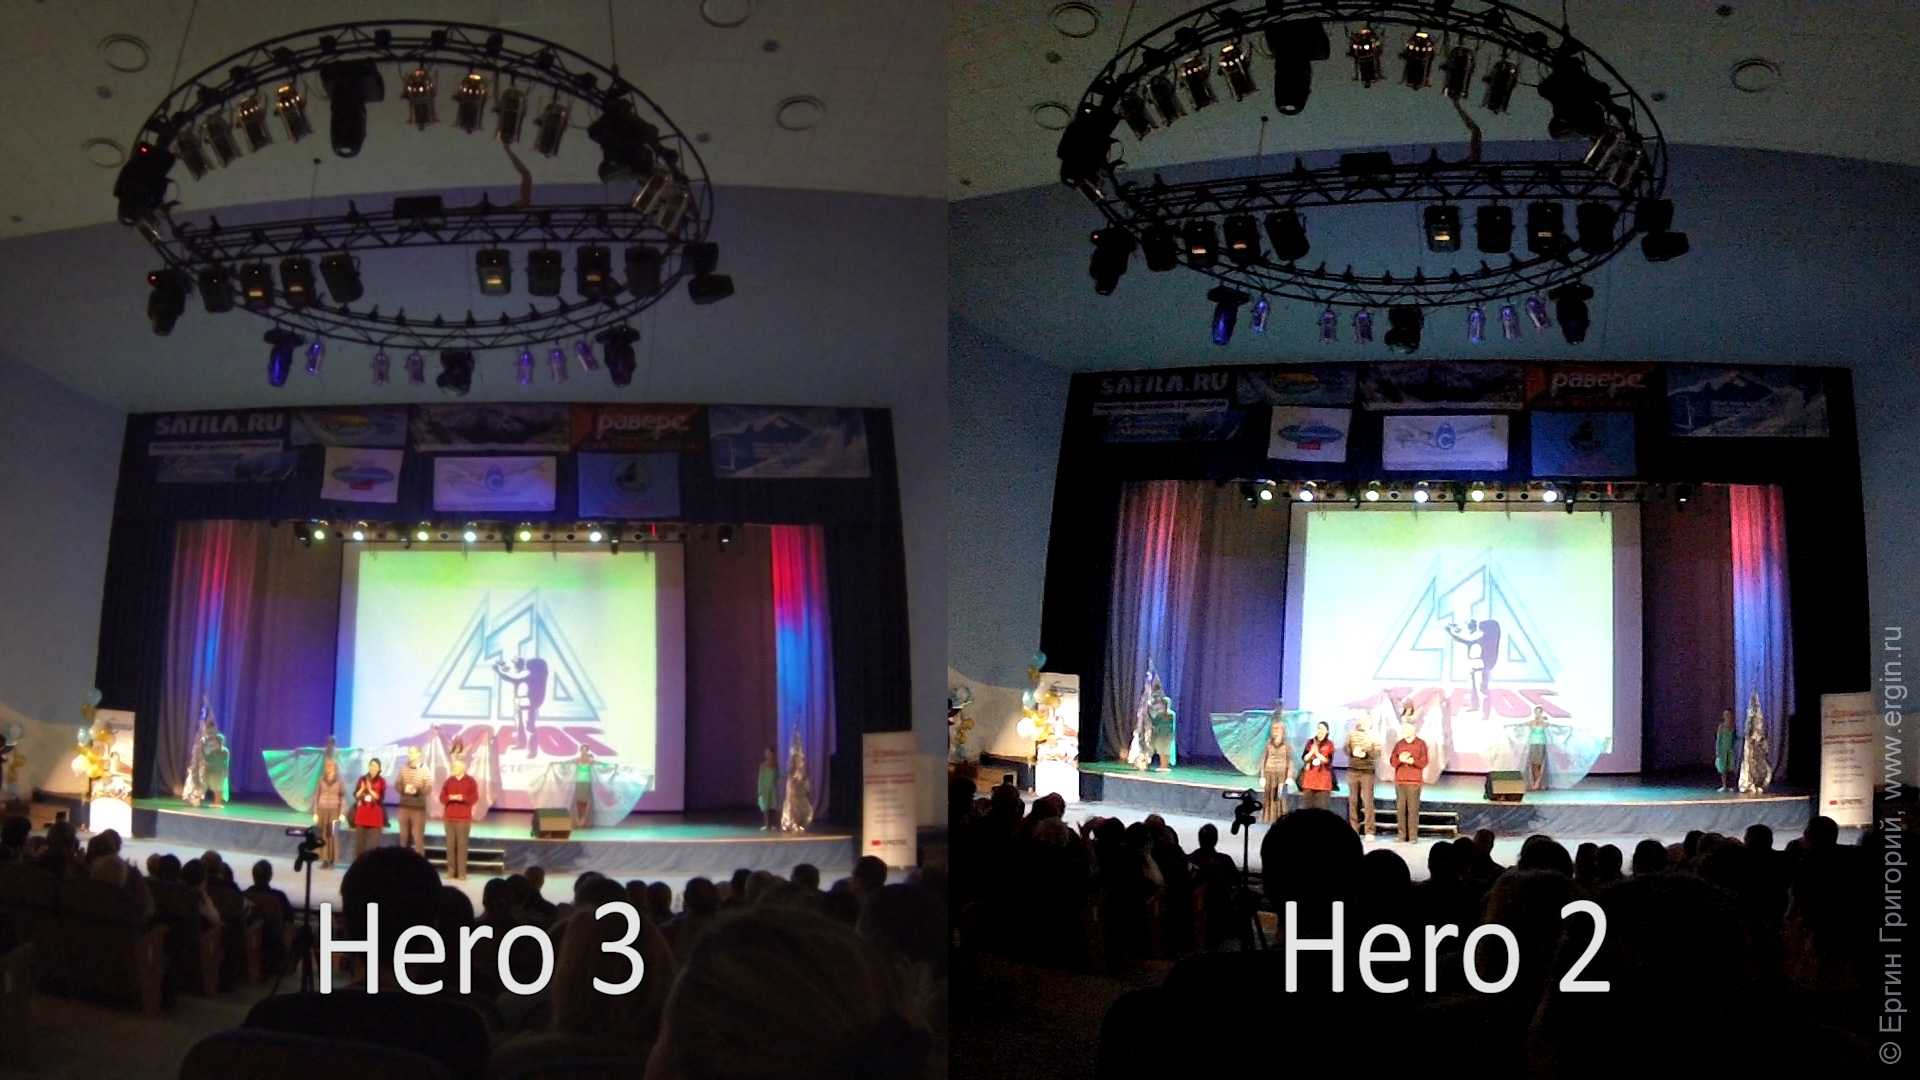 Зрительный зал GoPro Hero 3 мылит, Hero 2 излишне резко шарпит с шумами